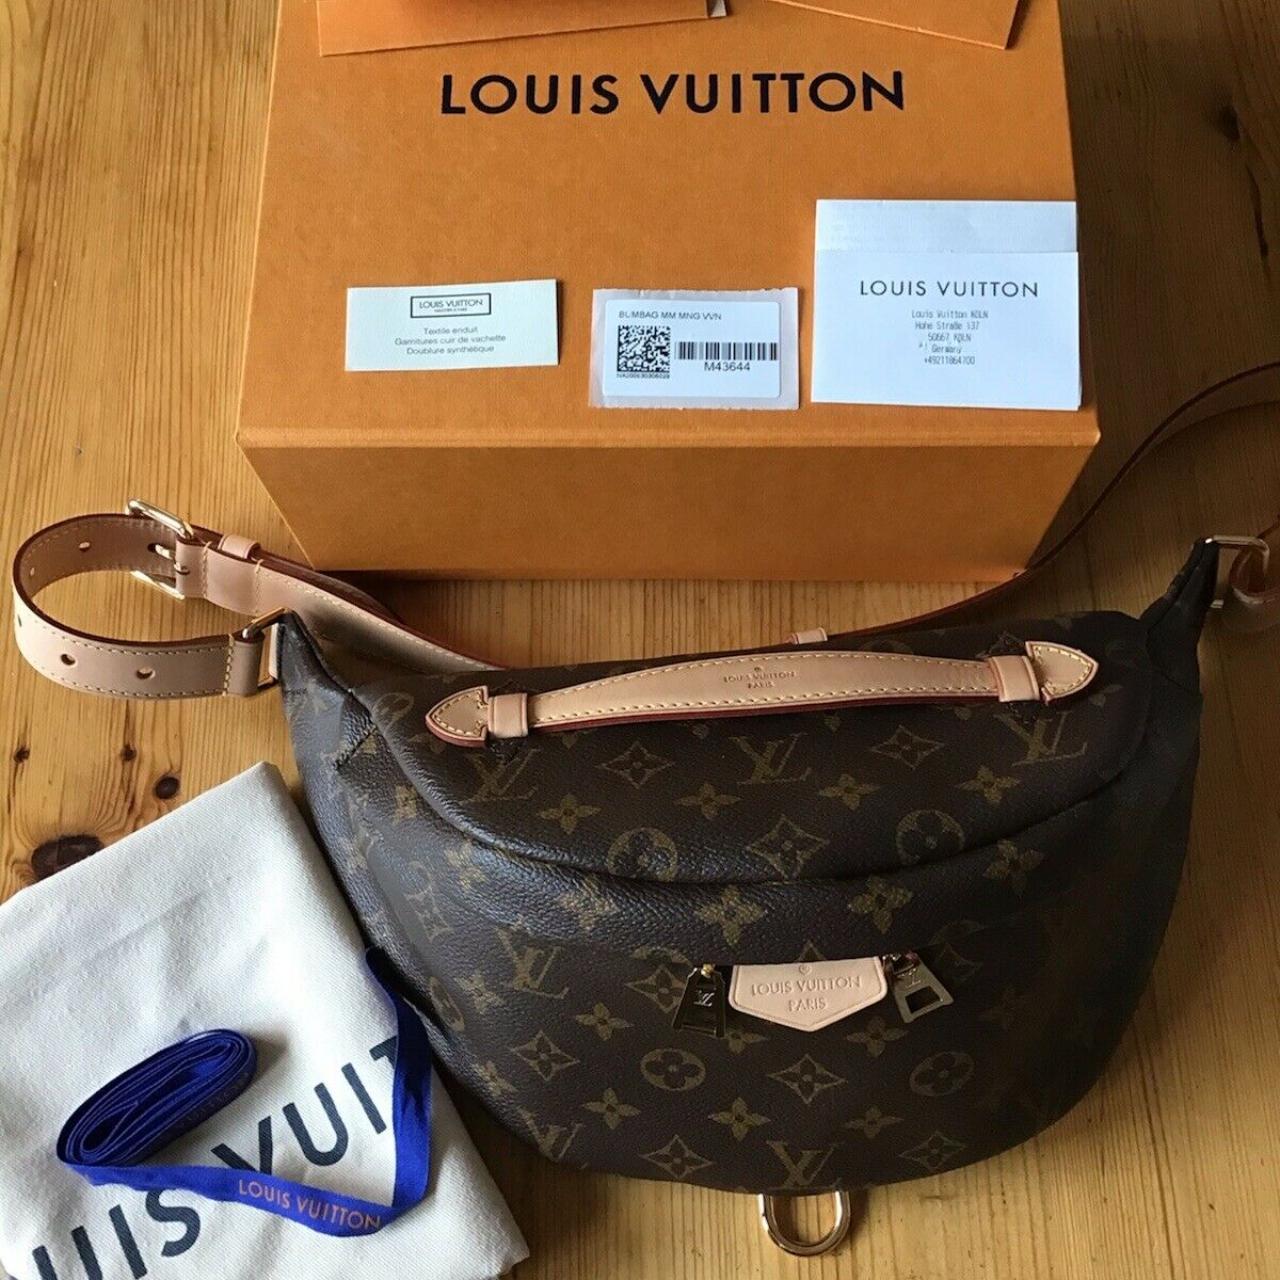 LOUIS VUITTON Bum Waist Body Bag M43644